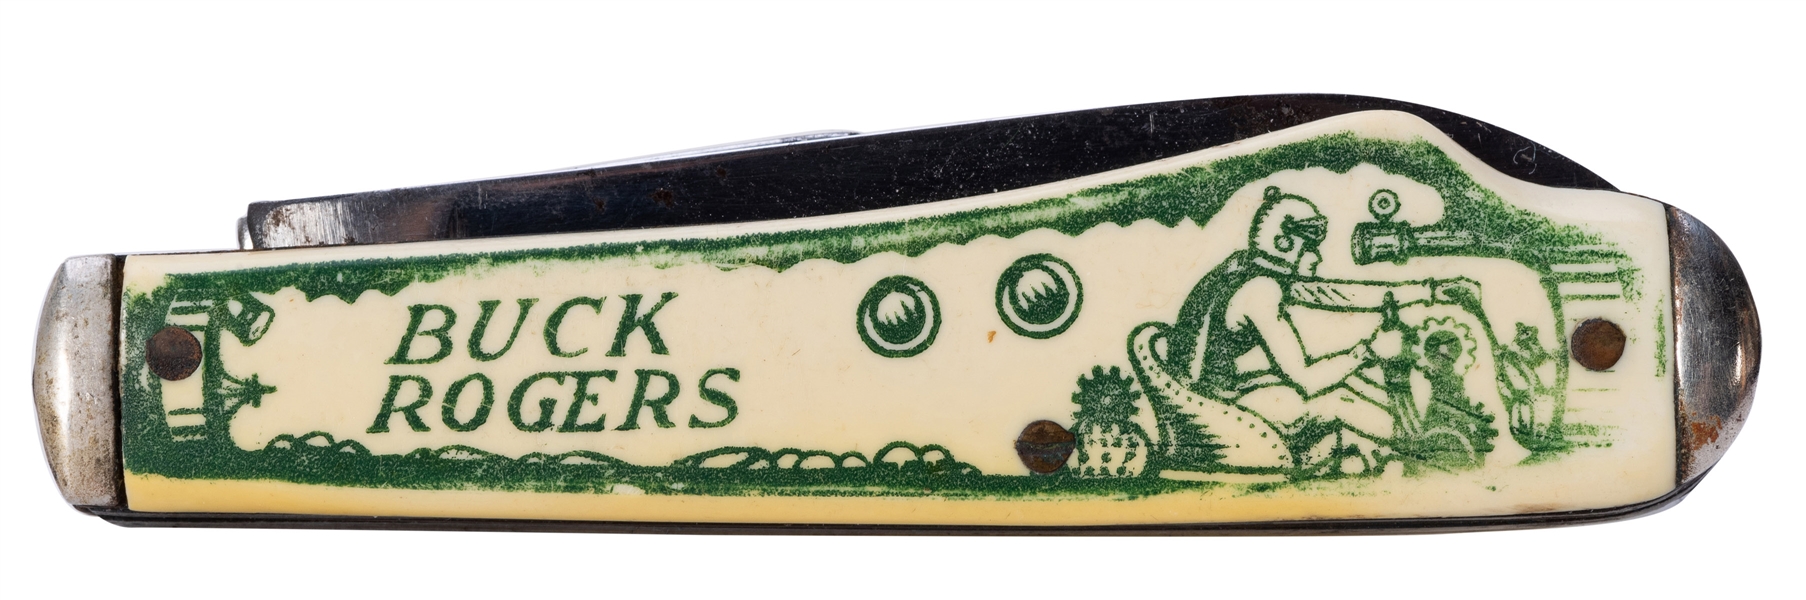  Buck Rogers Pocket Knife.  